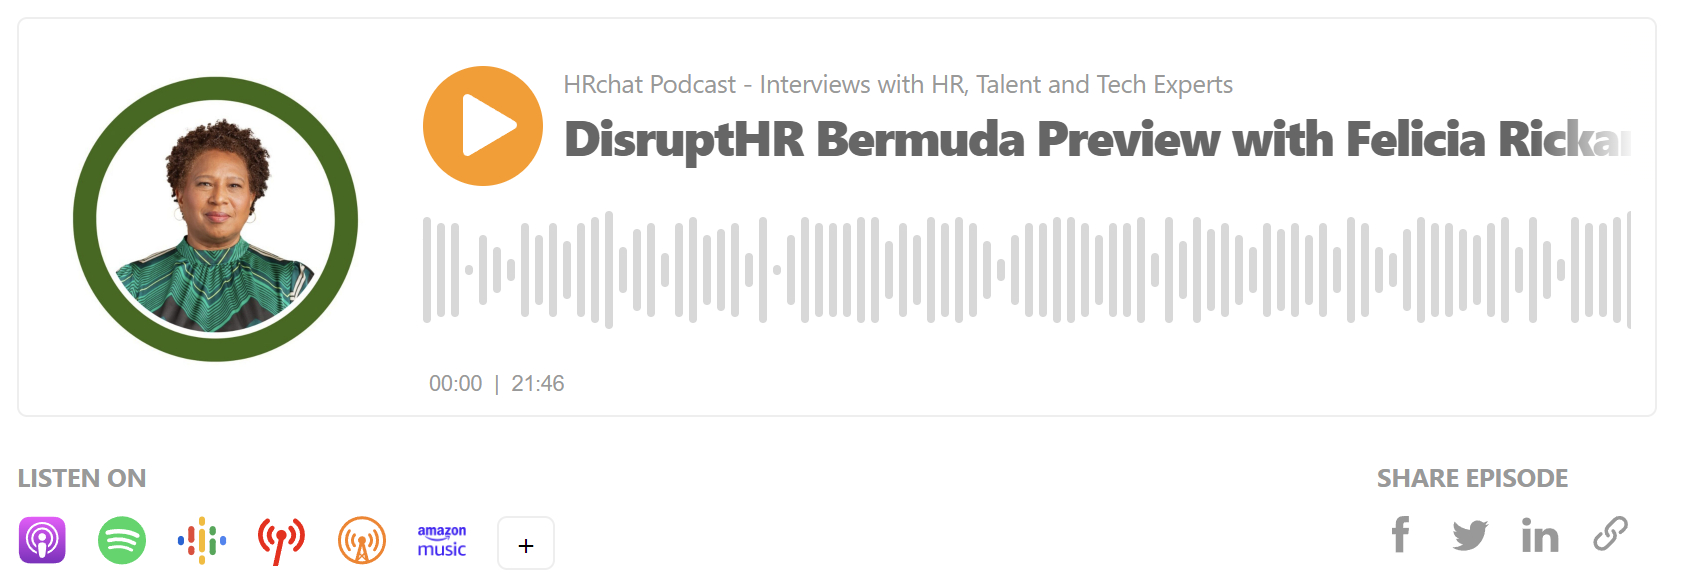 DisruptHR Bermuda Preview with Felicia Rickards